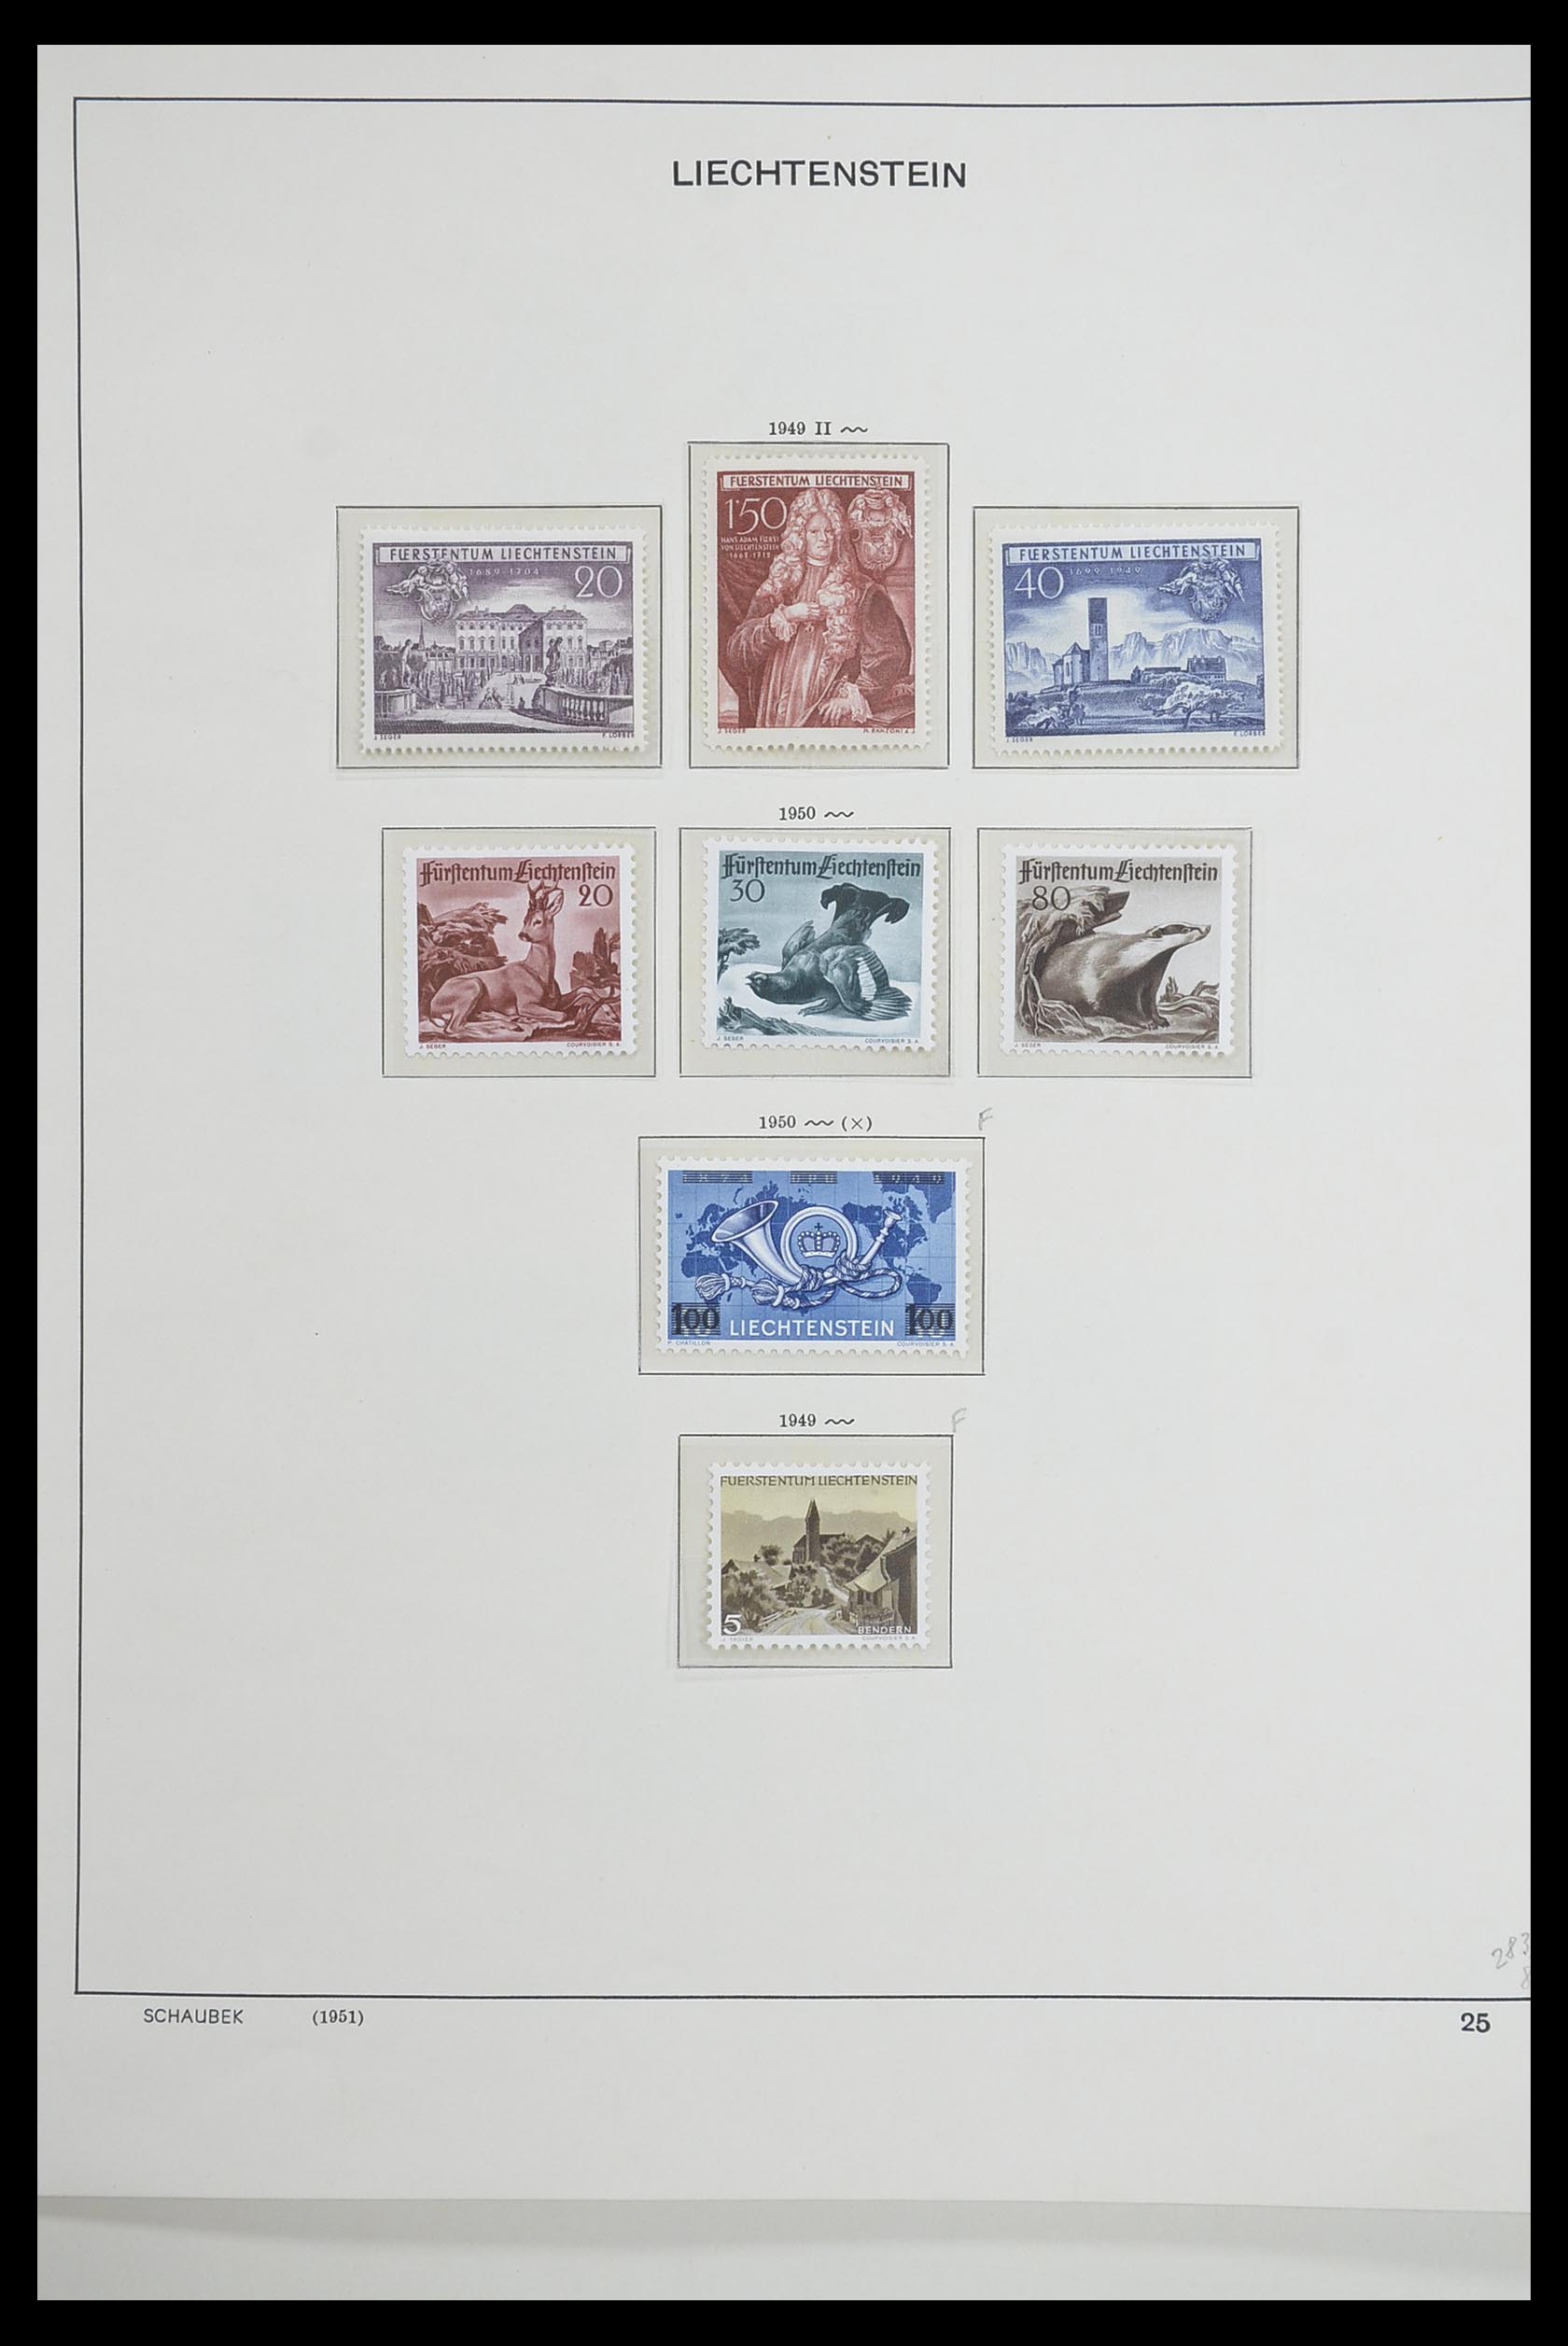 33274 026 - Stamp collection 33274 Liechtenstein 1912-1996.